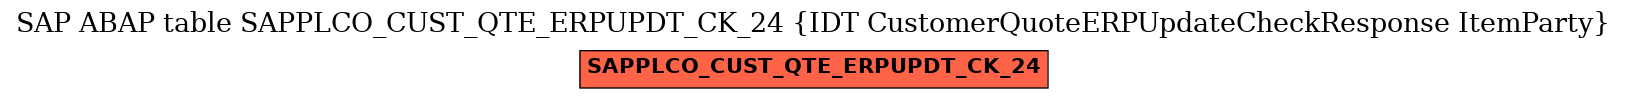 E-R Diagram for table SAPPLCO_CUST_QTE_ERPUPDT_CK_24 (IDT CustomerQuoteERPUpdateCheckResponse ItemParty)